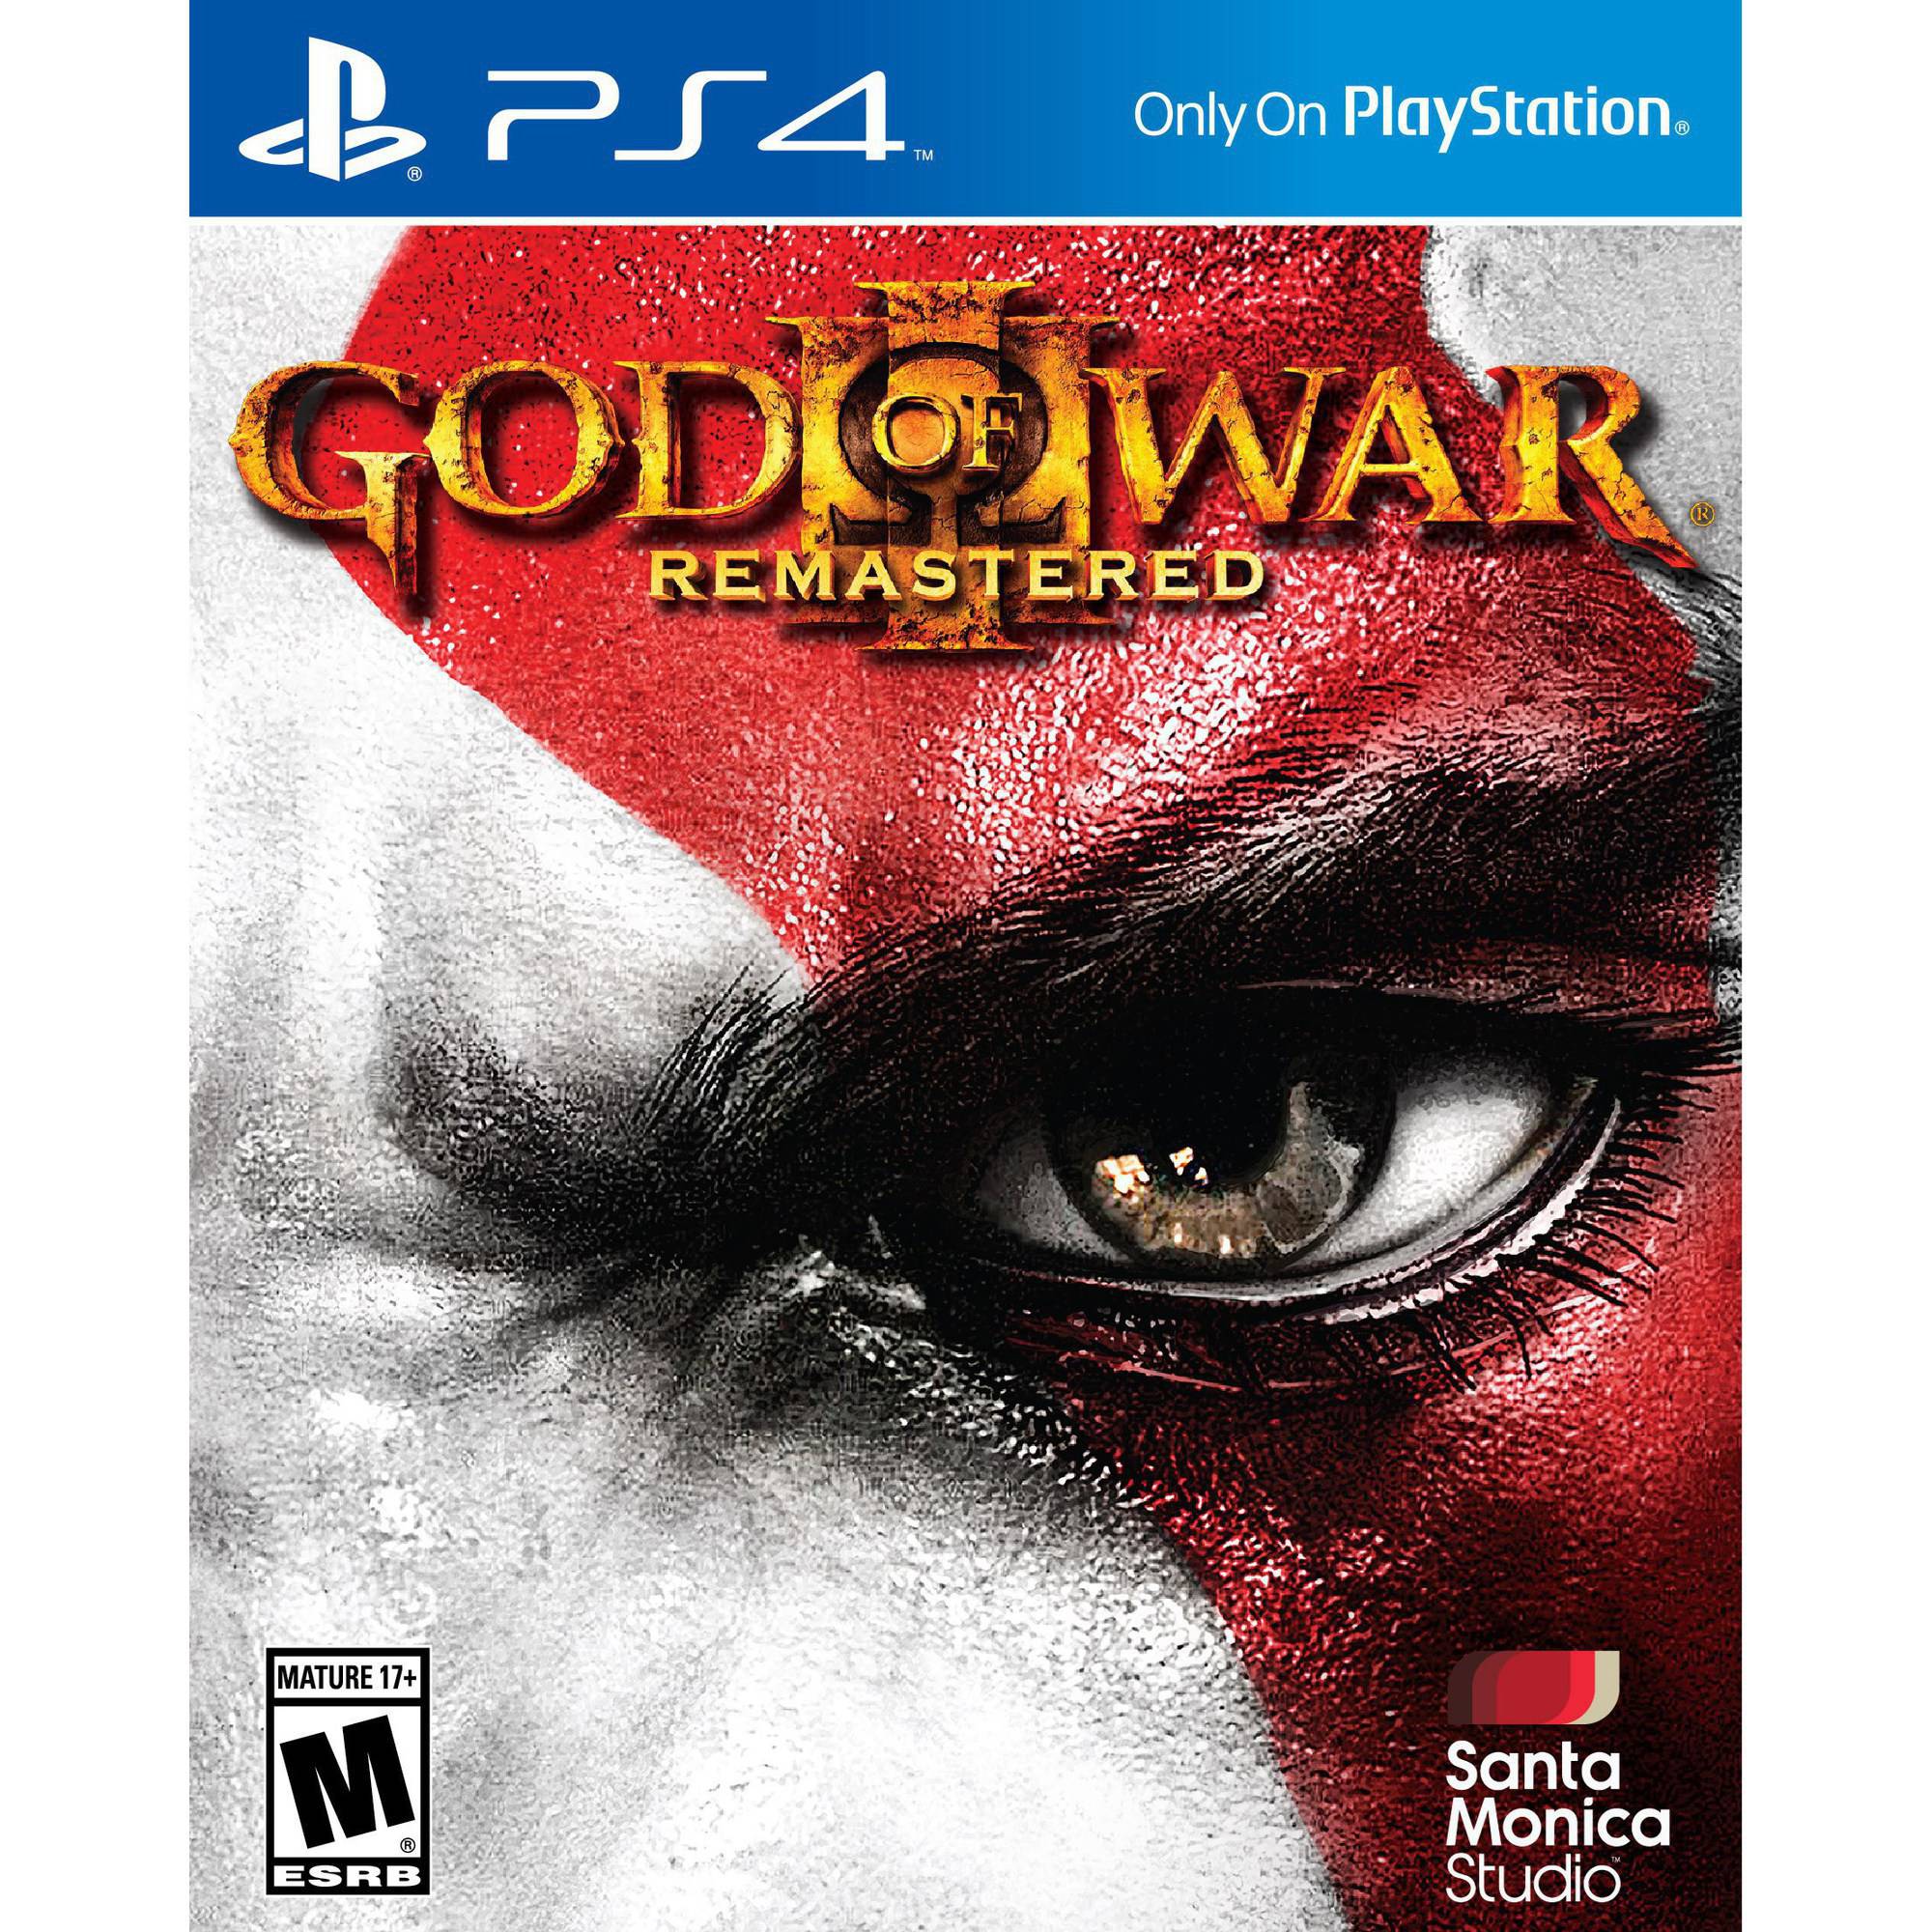 God of War đã trở thành tựa game nổi tiếng trên toàn thế giới với chất lượng đồ họa tuyệt đỉnh, hệ thống chiến đấu đa dạng và câu chuyện hấp dẫn. Đối với game thủ mới chơi avatar PS4, có một số mẹo để giúp bạn trở thành chiến binh mạnh nhất.